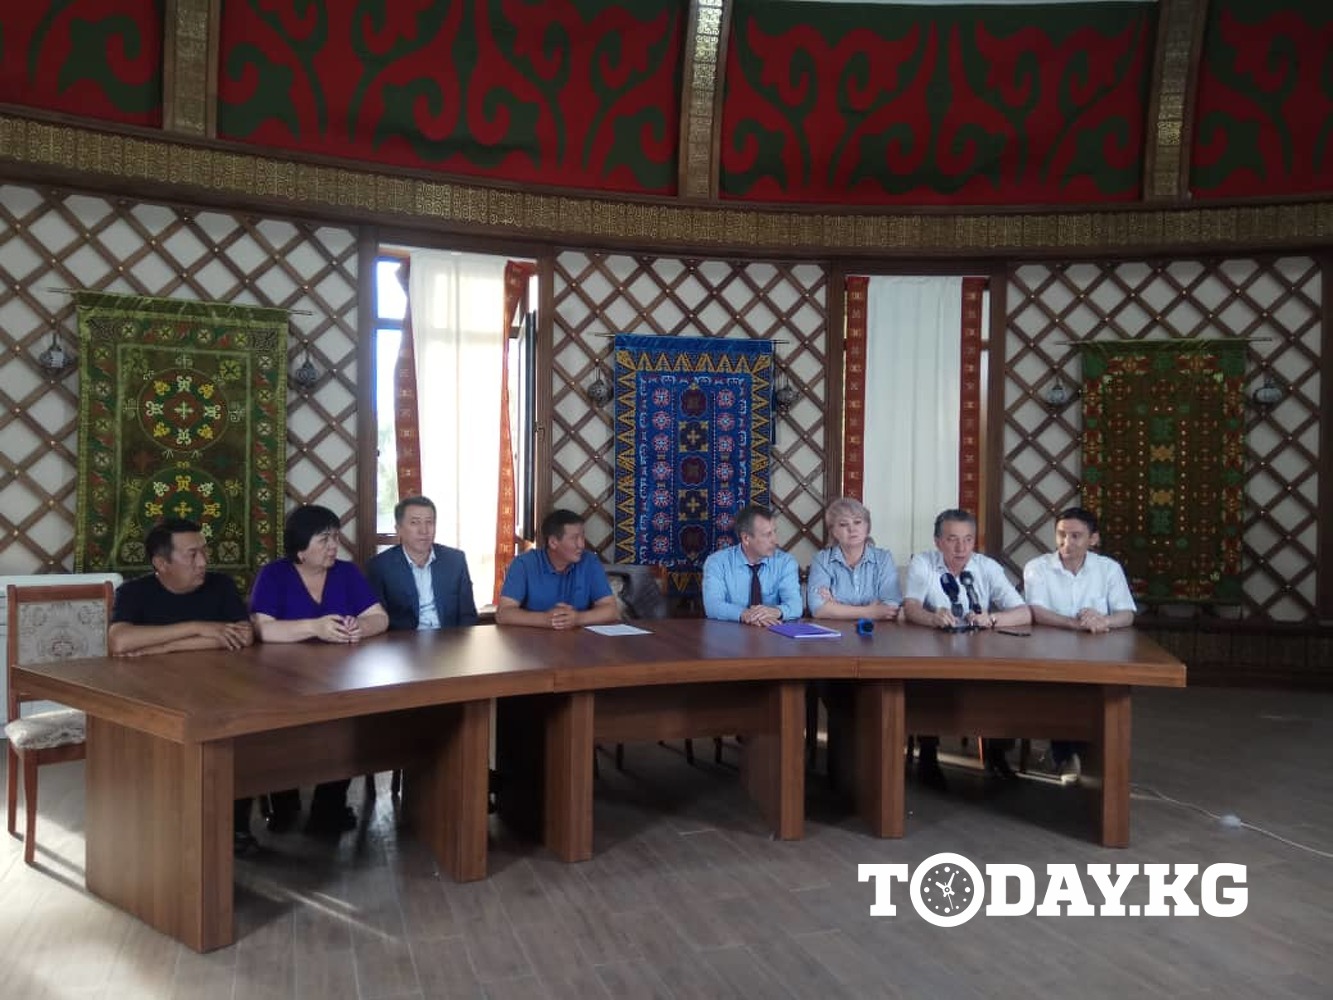 Фарид Ниязов: Президент и парламент могут недоработать свой срок — Today.kg